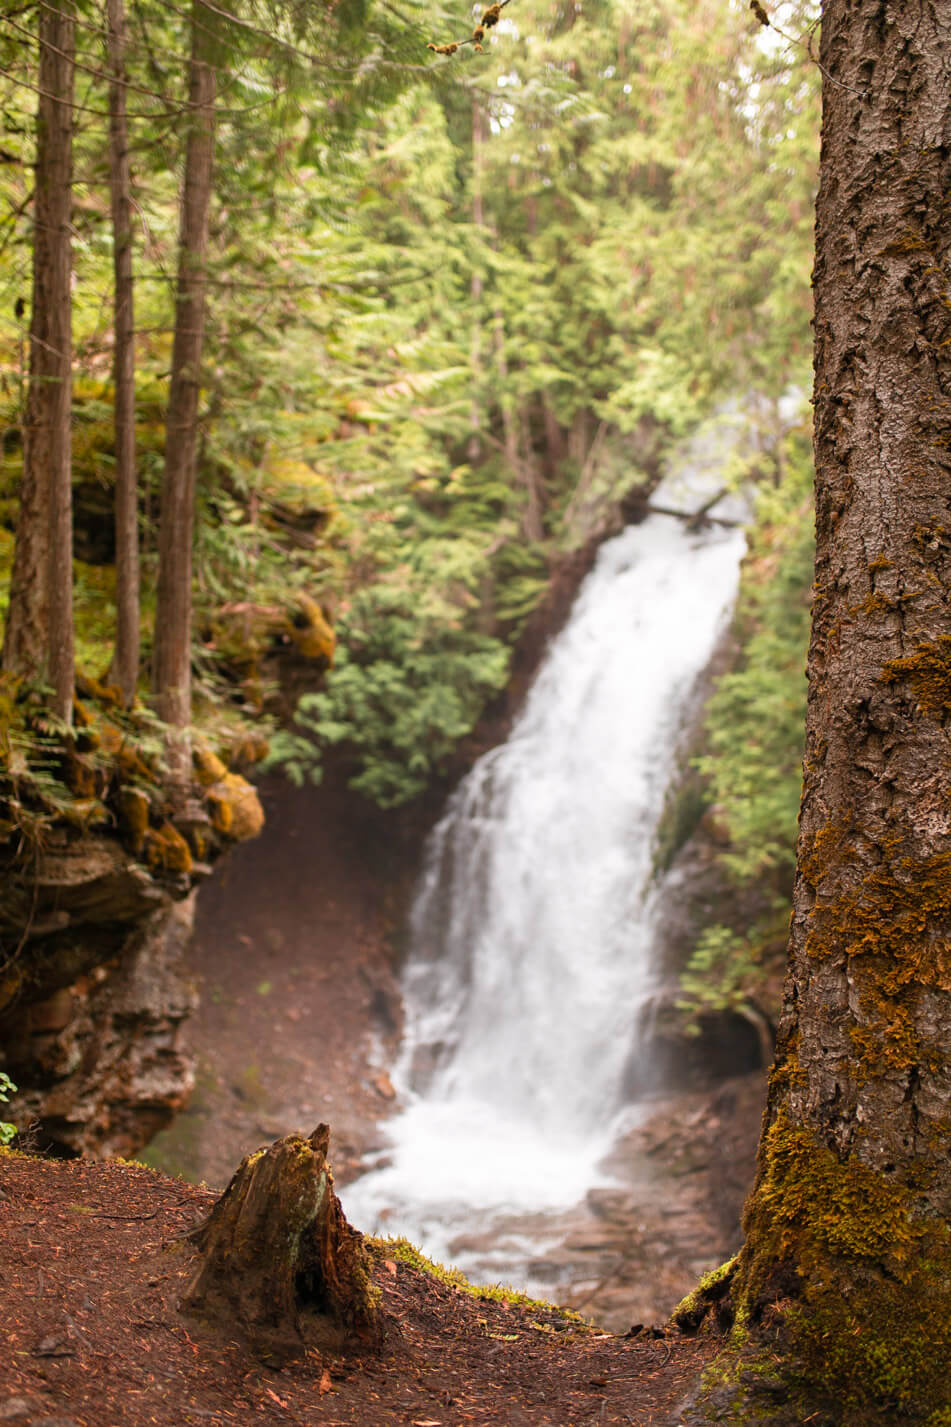 10 photos that will make you want to visit Kootenay Rockies, British Columbia